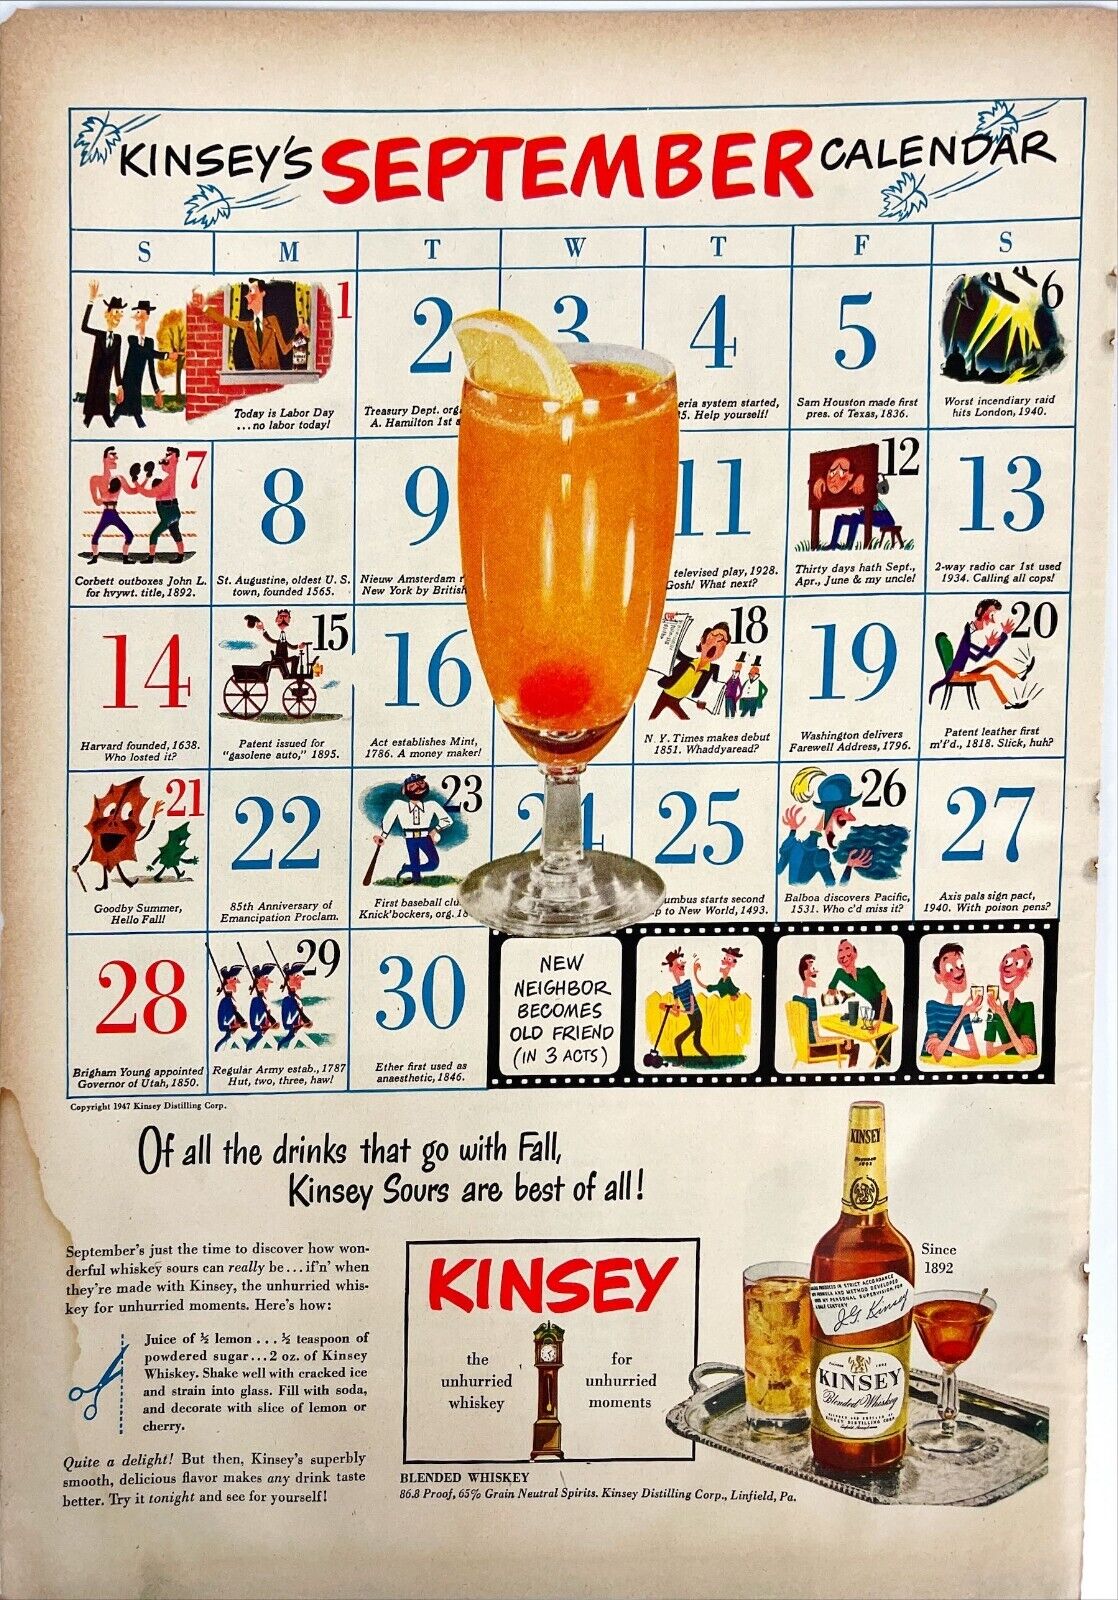 Kinsey Whiskey September Calendar Cocktail Recipe Vtg Print Magazine Ad 1940s